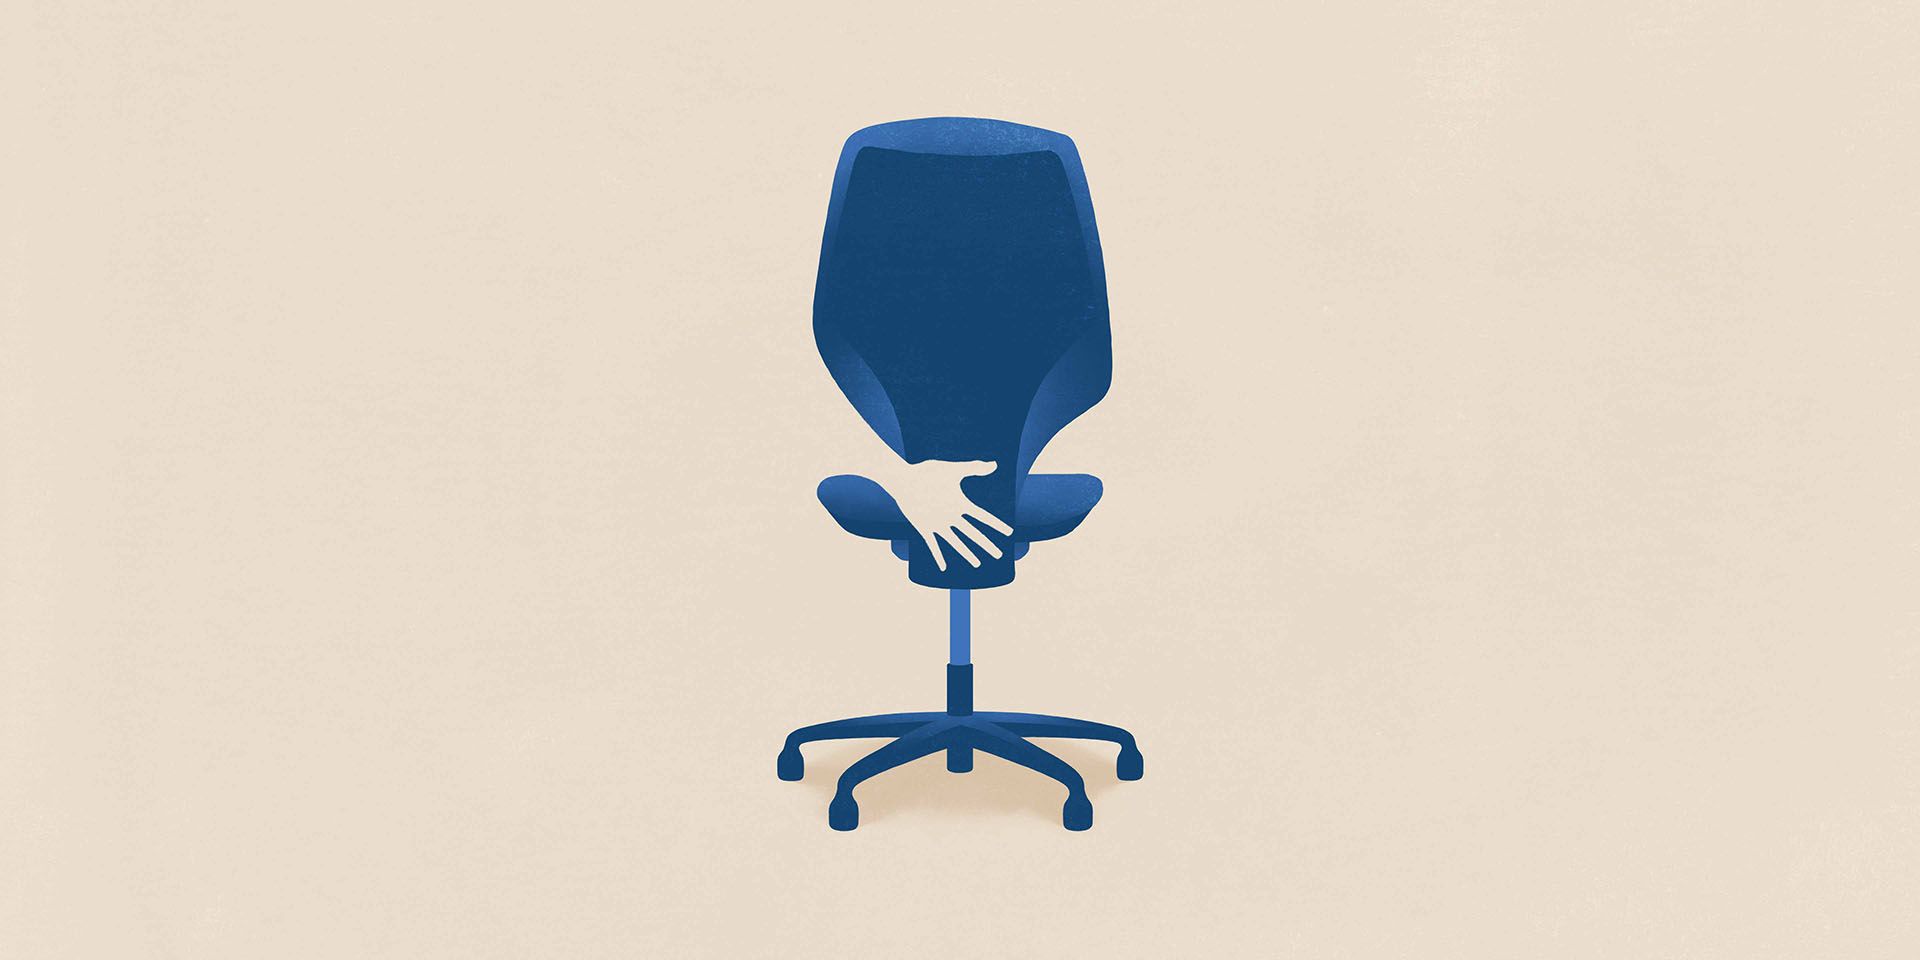 Le harcèlement sexuel sur le lieu de travail est symbolisé par l’attouchement d’une main sur une chaise de bureau.